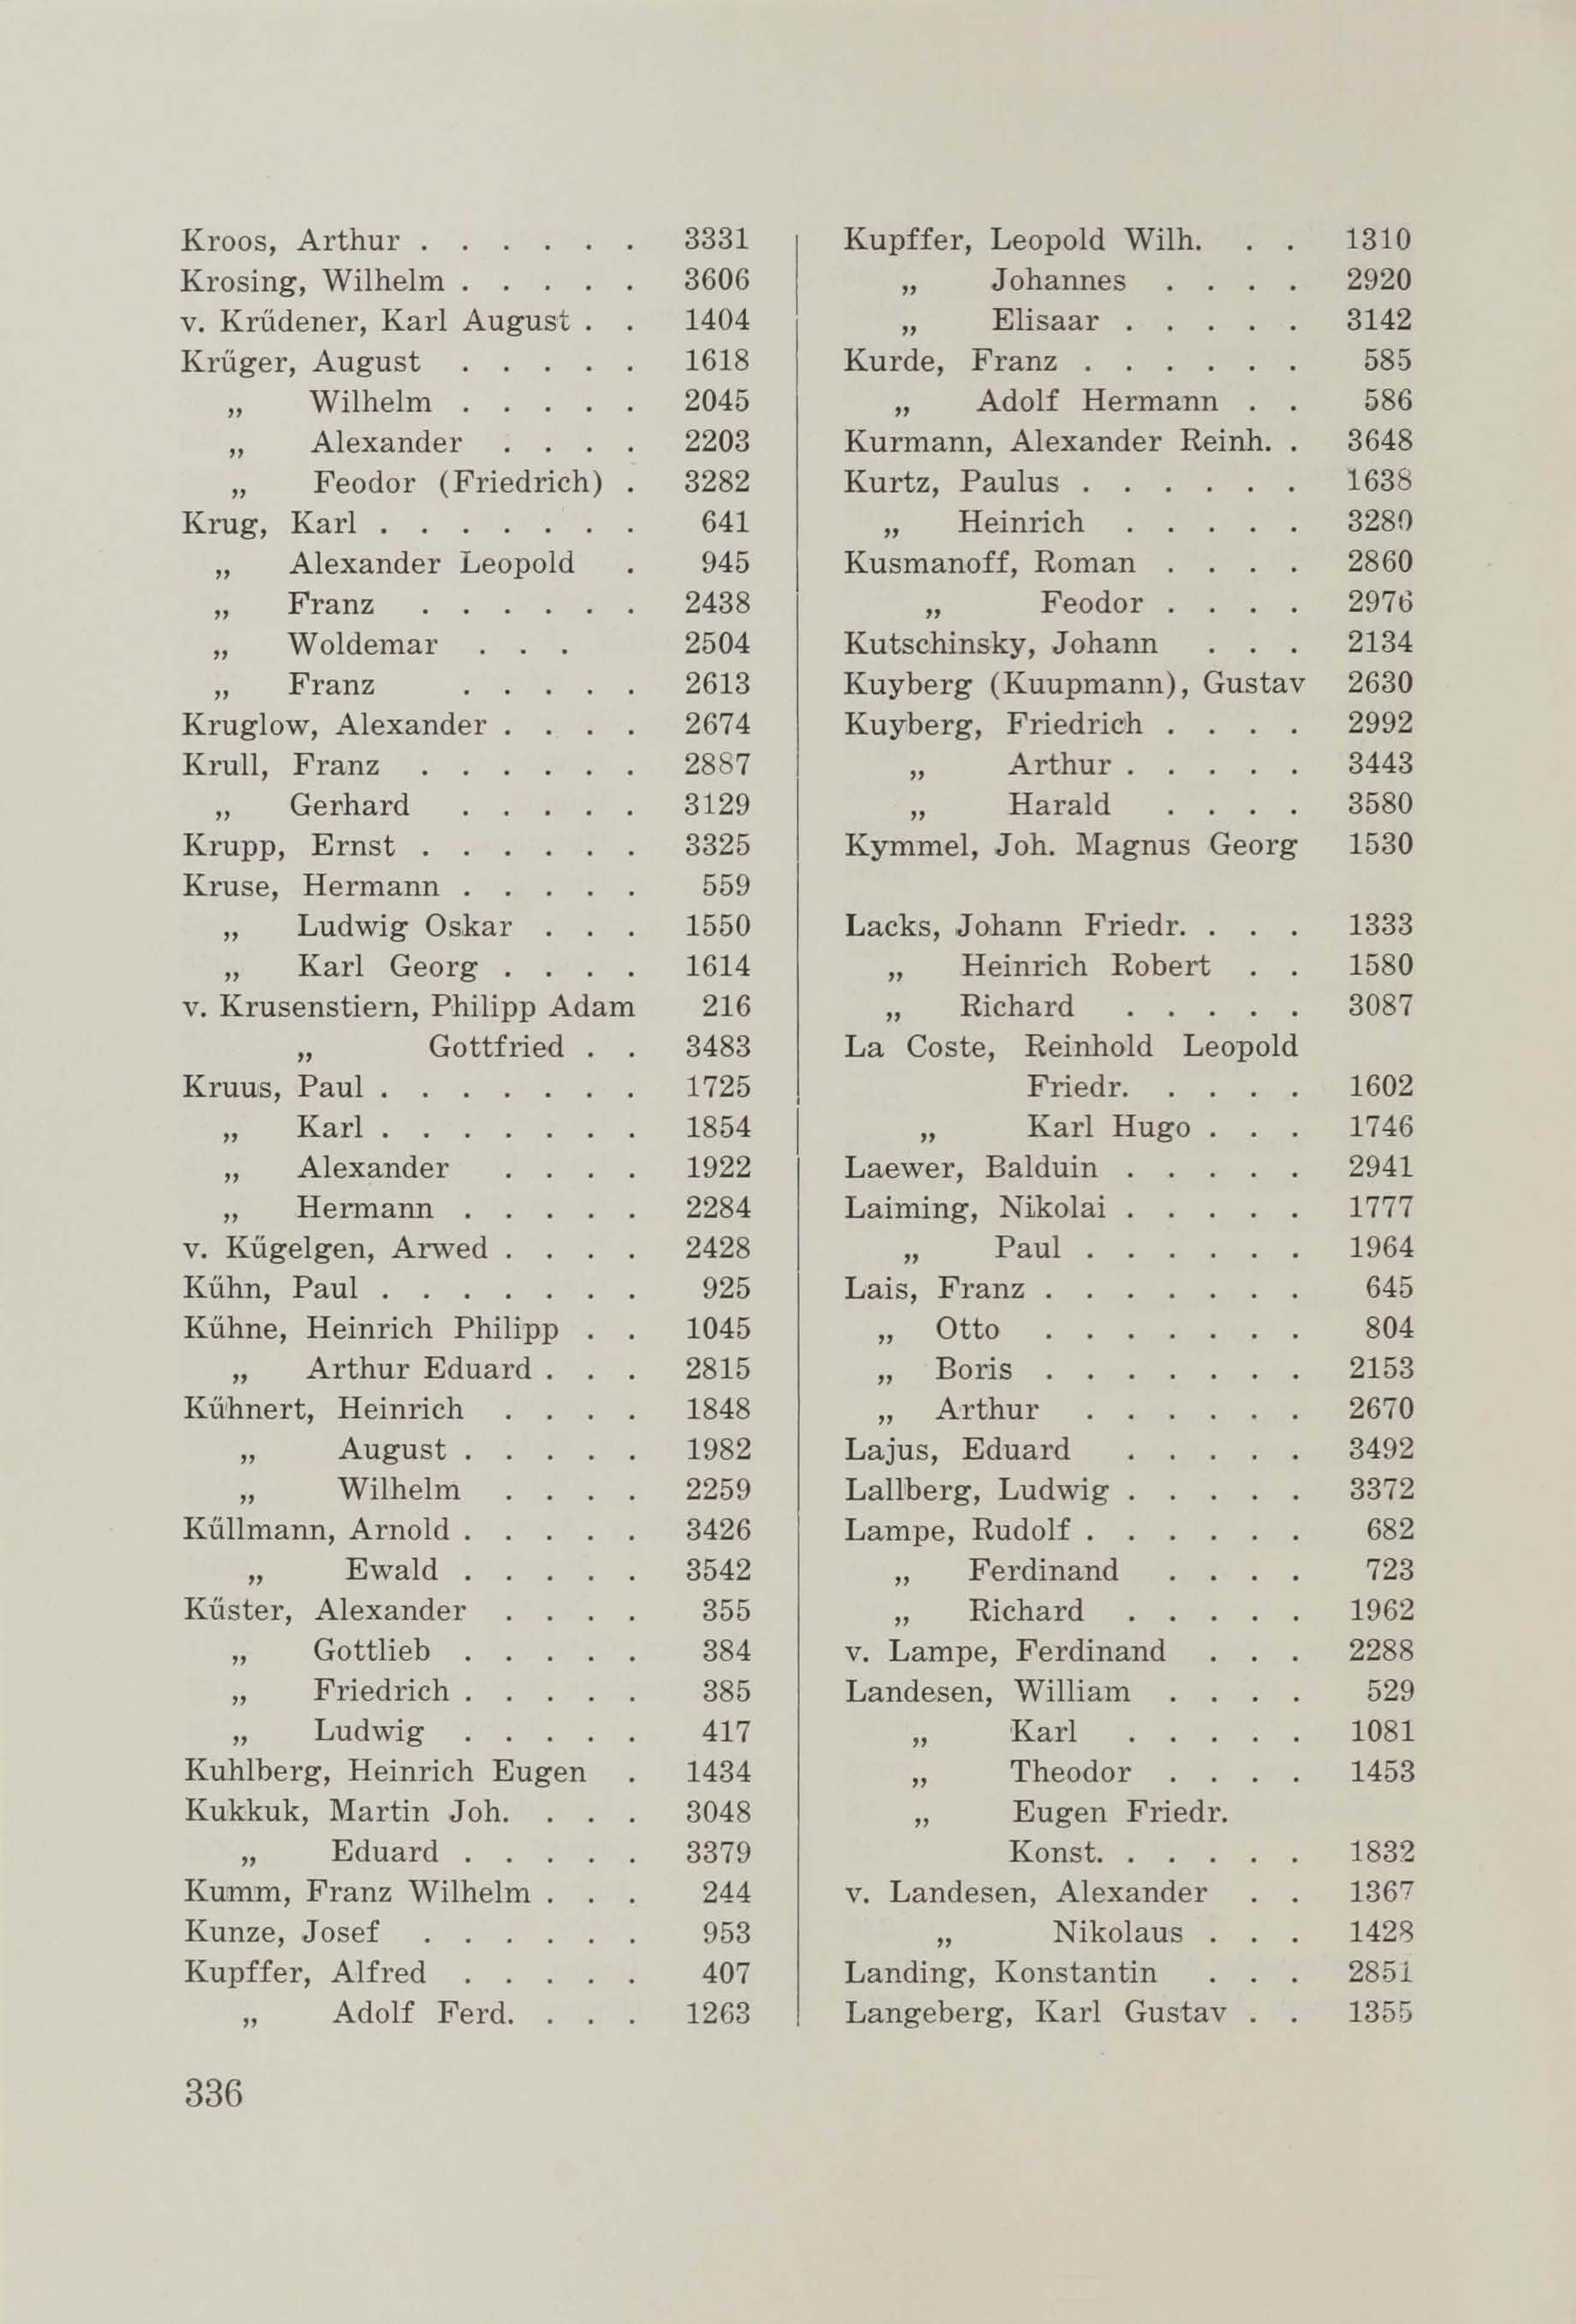 Schüler-Verzeichnis des Revalschen Gouvernements-Gymnasiums 1805–1890 (1931) | 346. (336) Main body of text